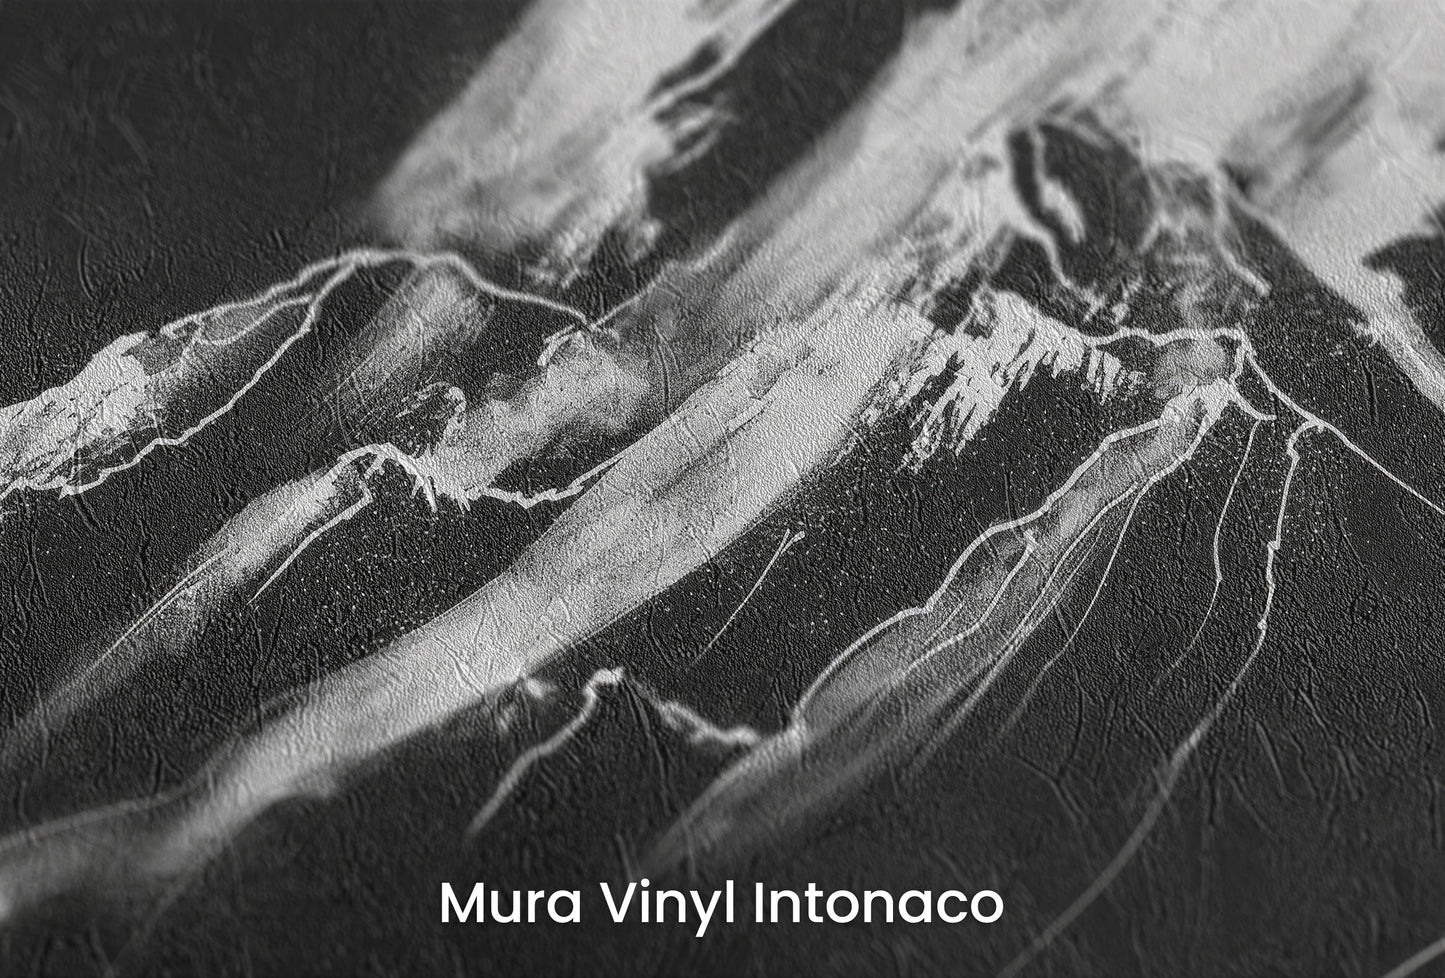 Zbliżenie na artystyczną fototapetę o nazwie Monochrome Majesty na podłożu Mura Vinyl Intonaco - struktura tartego tynku.